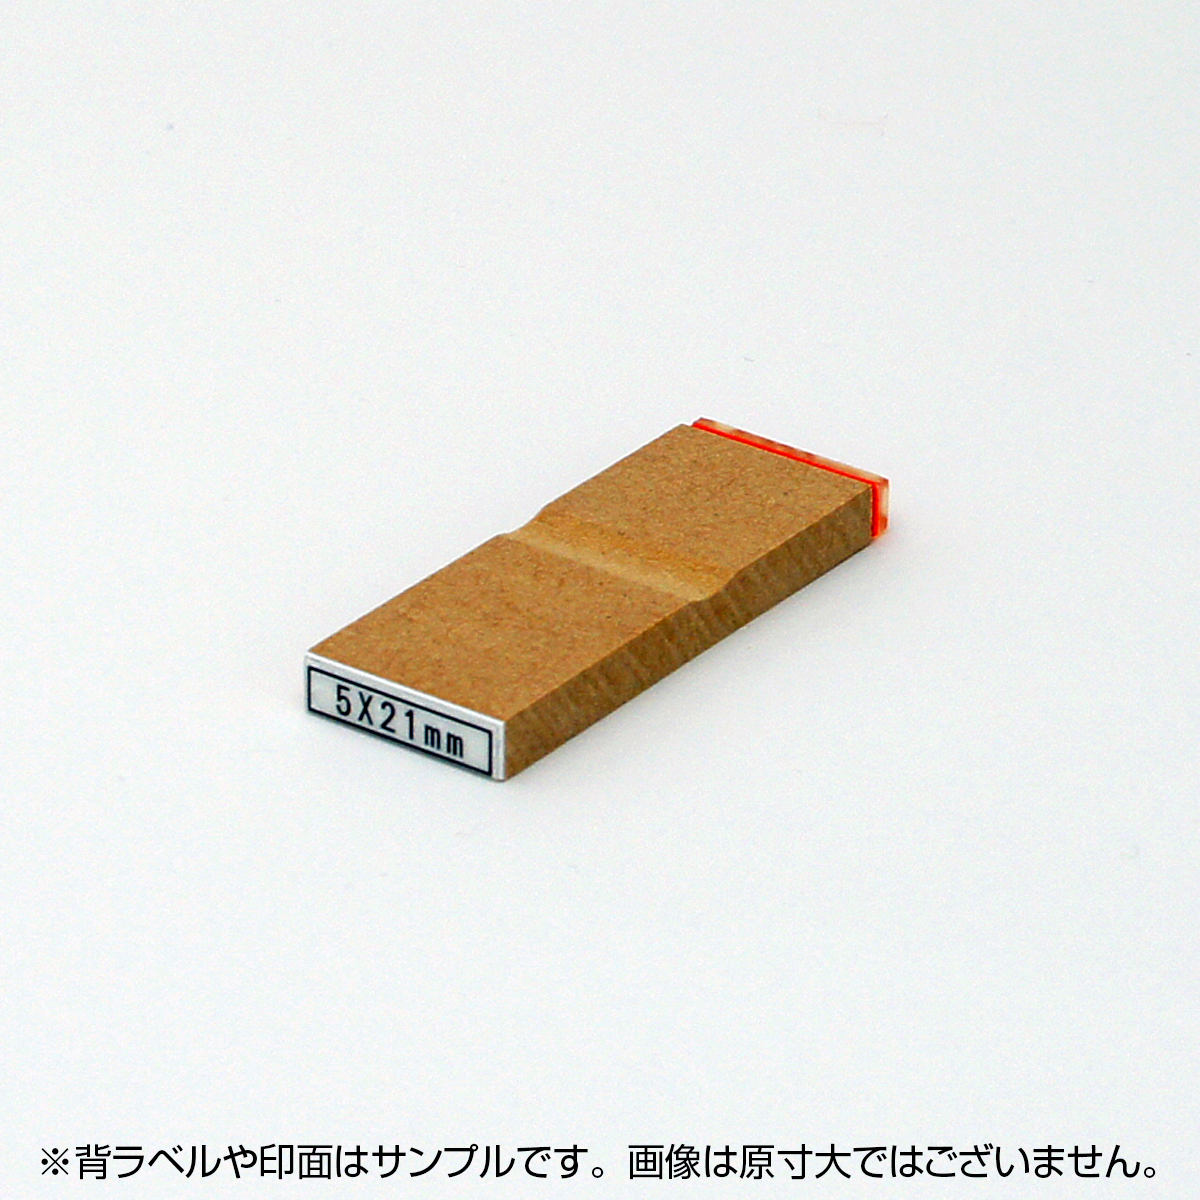 一般用途[感光樹脂]  テキスト入稿 木台ゴム印 5×21mm